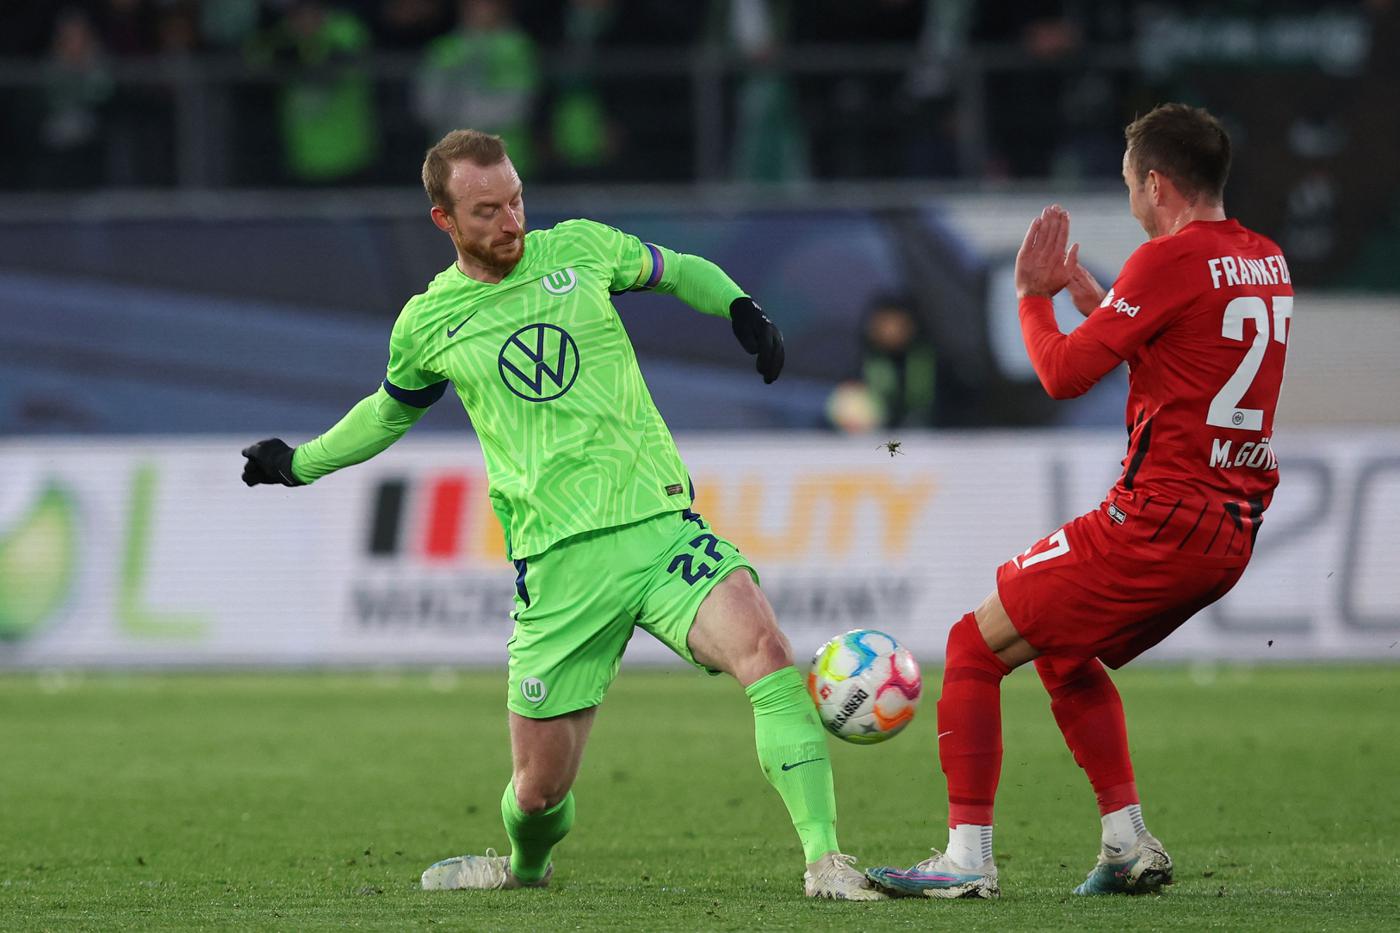 Wolfsburg - Eintracht - 2:2. German Championship, round 23. Match review, statistics.